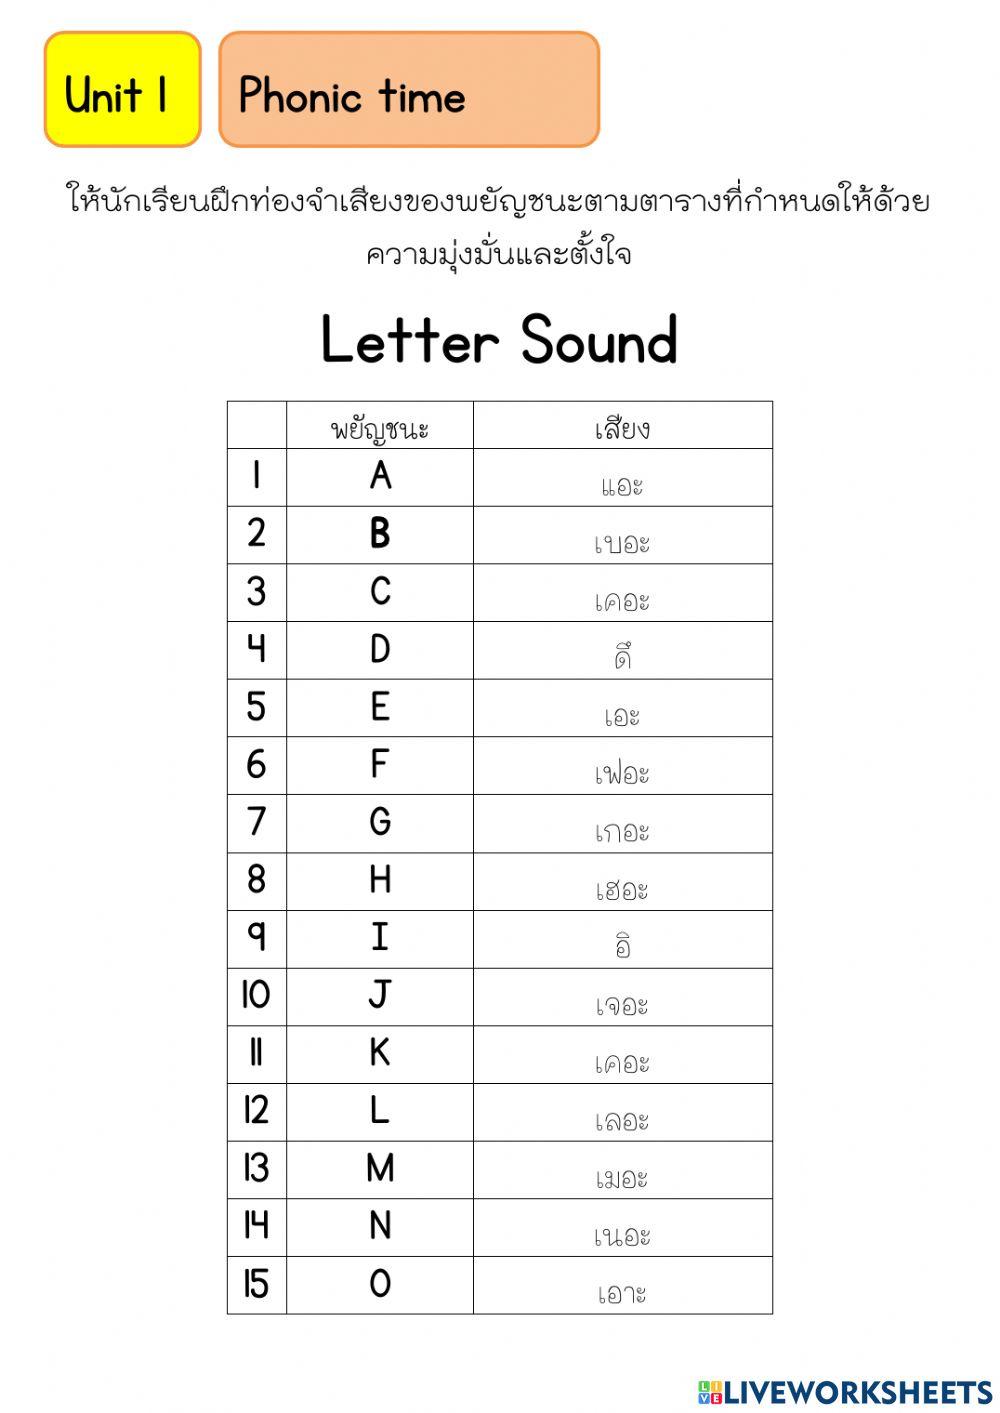 Letter sound